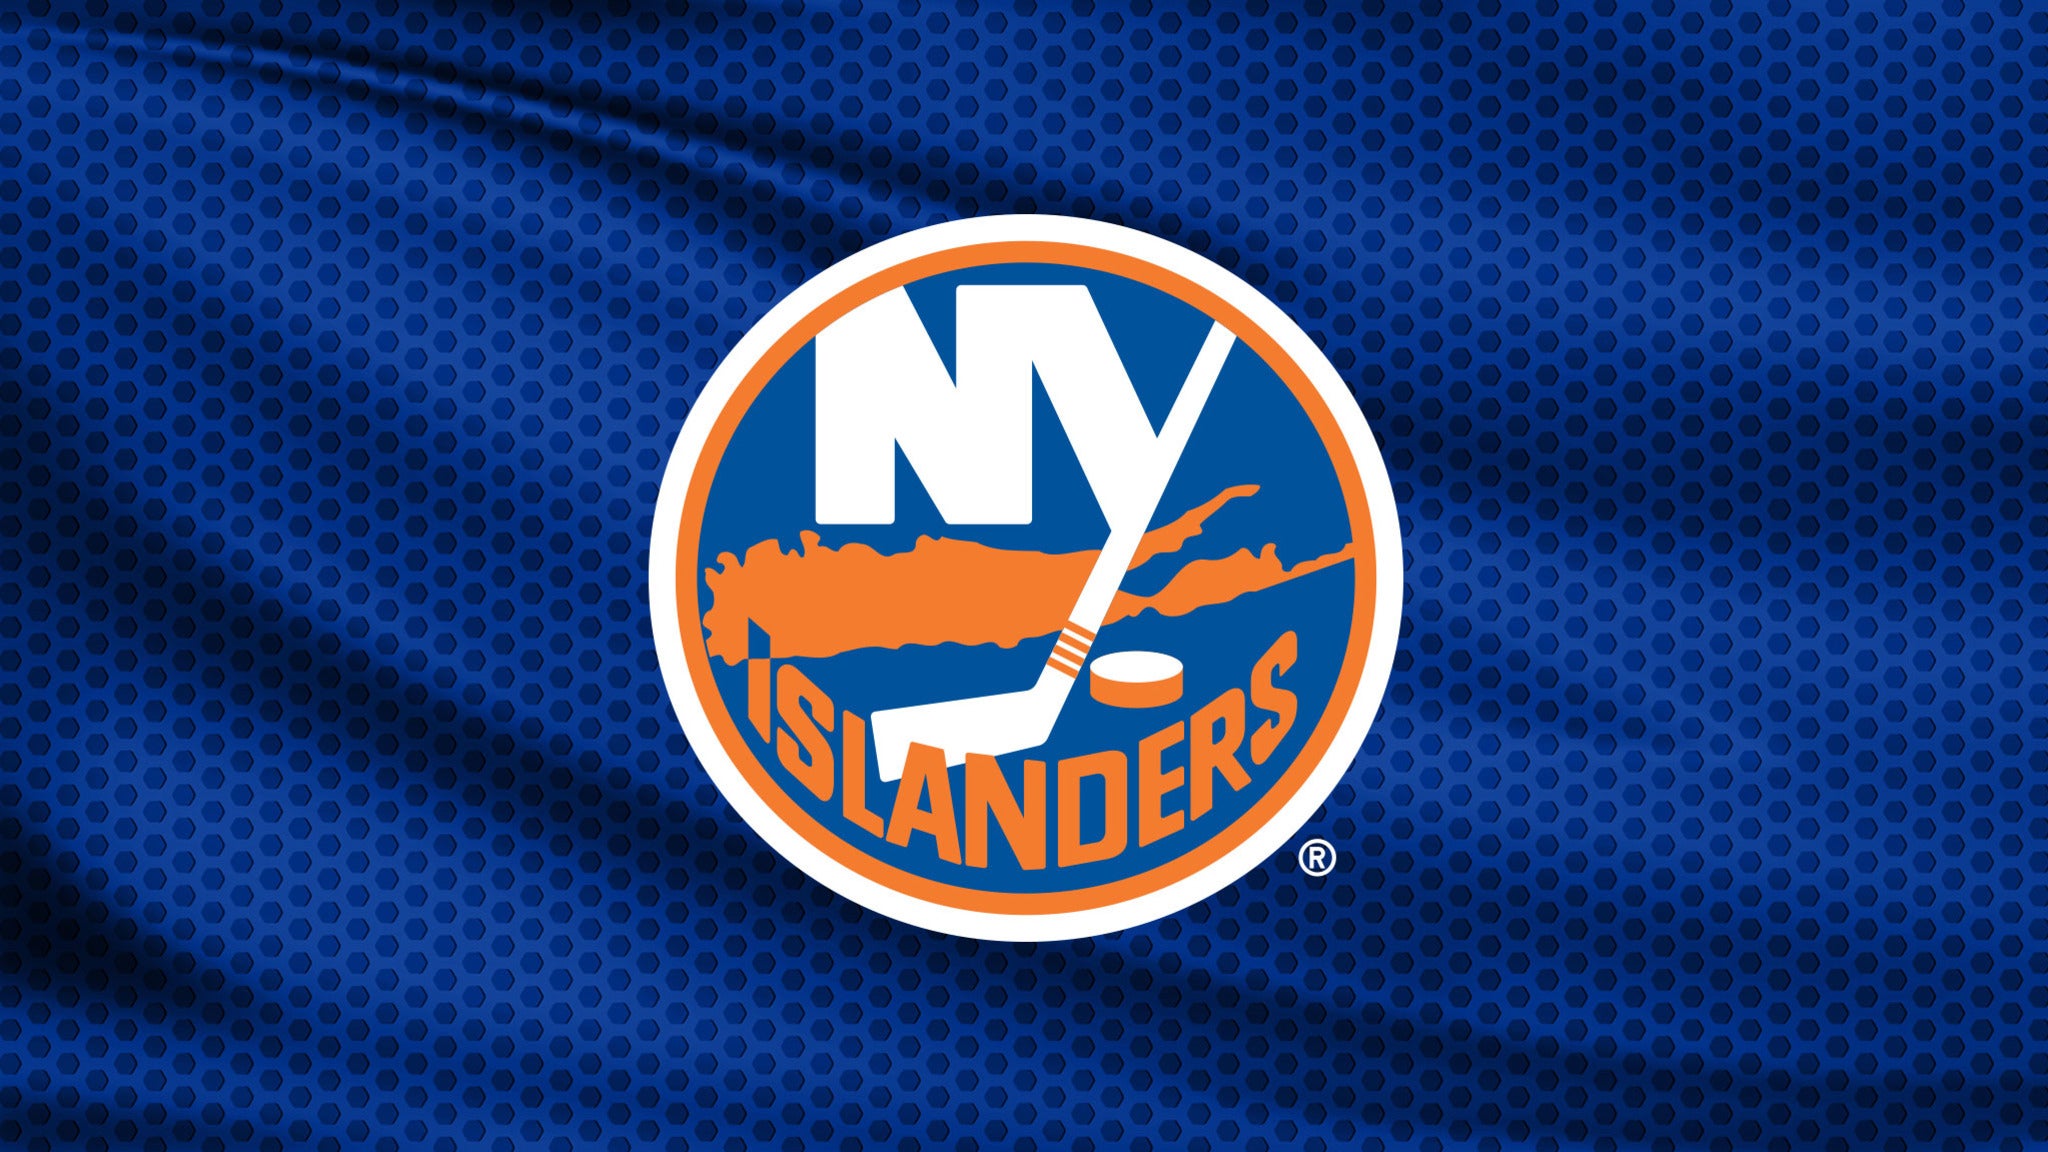 NY Islanders logo over a jersey